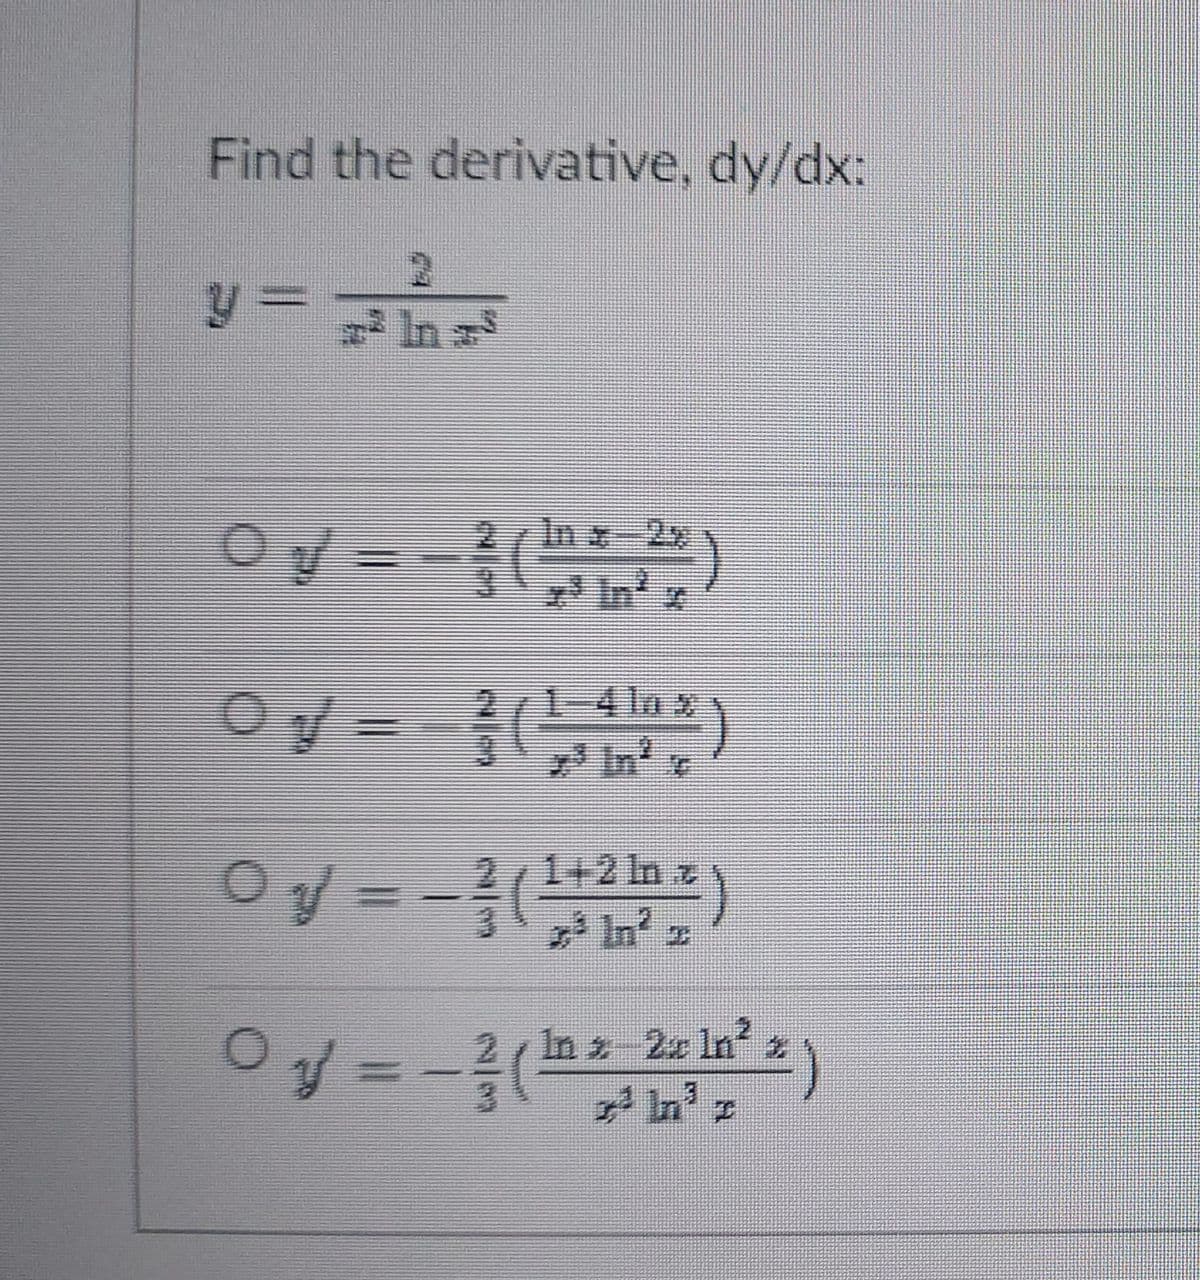 Find the derivative, dy/dx:
y=nが
可
In x-2x
In
1-4 lax
In' e
Oy = -()
1+2 In z
7 In z
In 2 2x In 2
